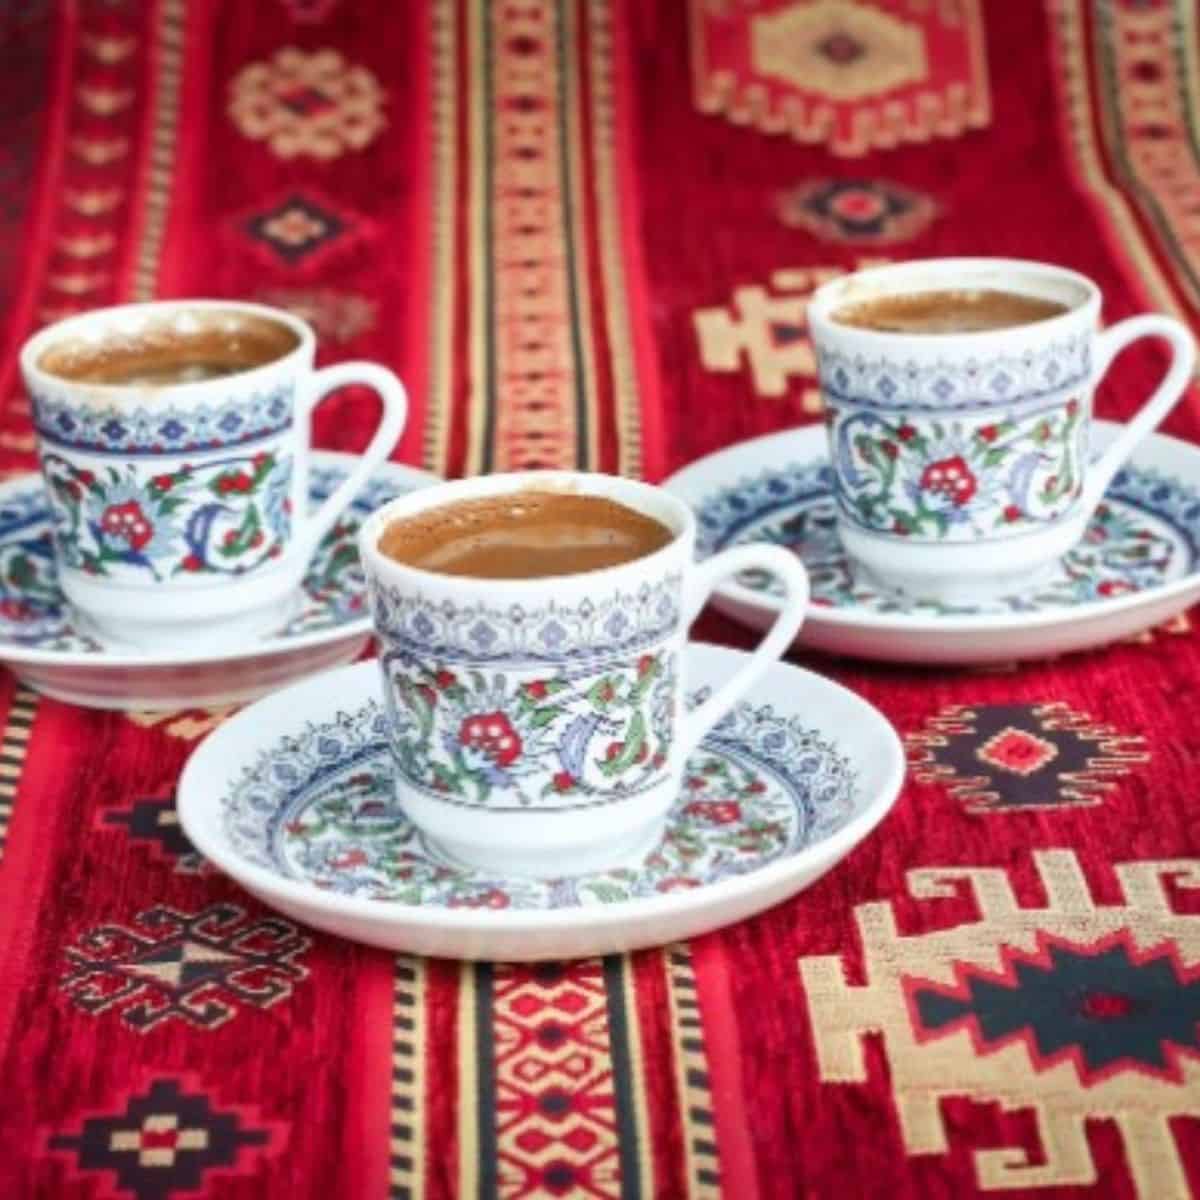 Turk kahvesi on red carpet